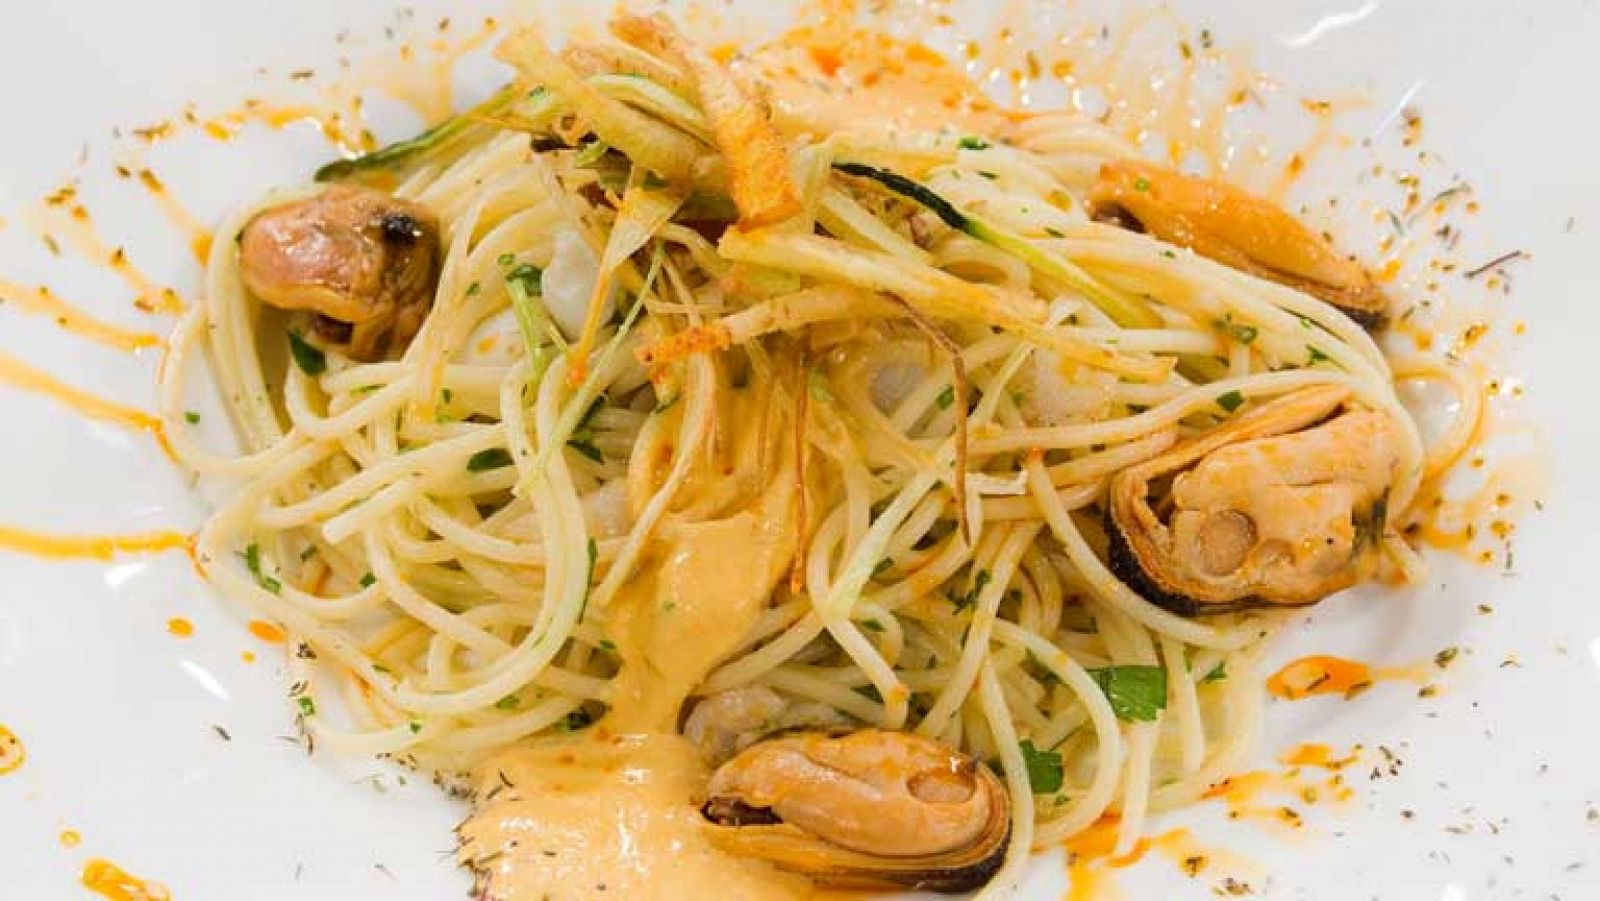 Saber cocinar - Spaguetti con salsa de mejillones y crujiente de puerro 